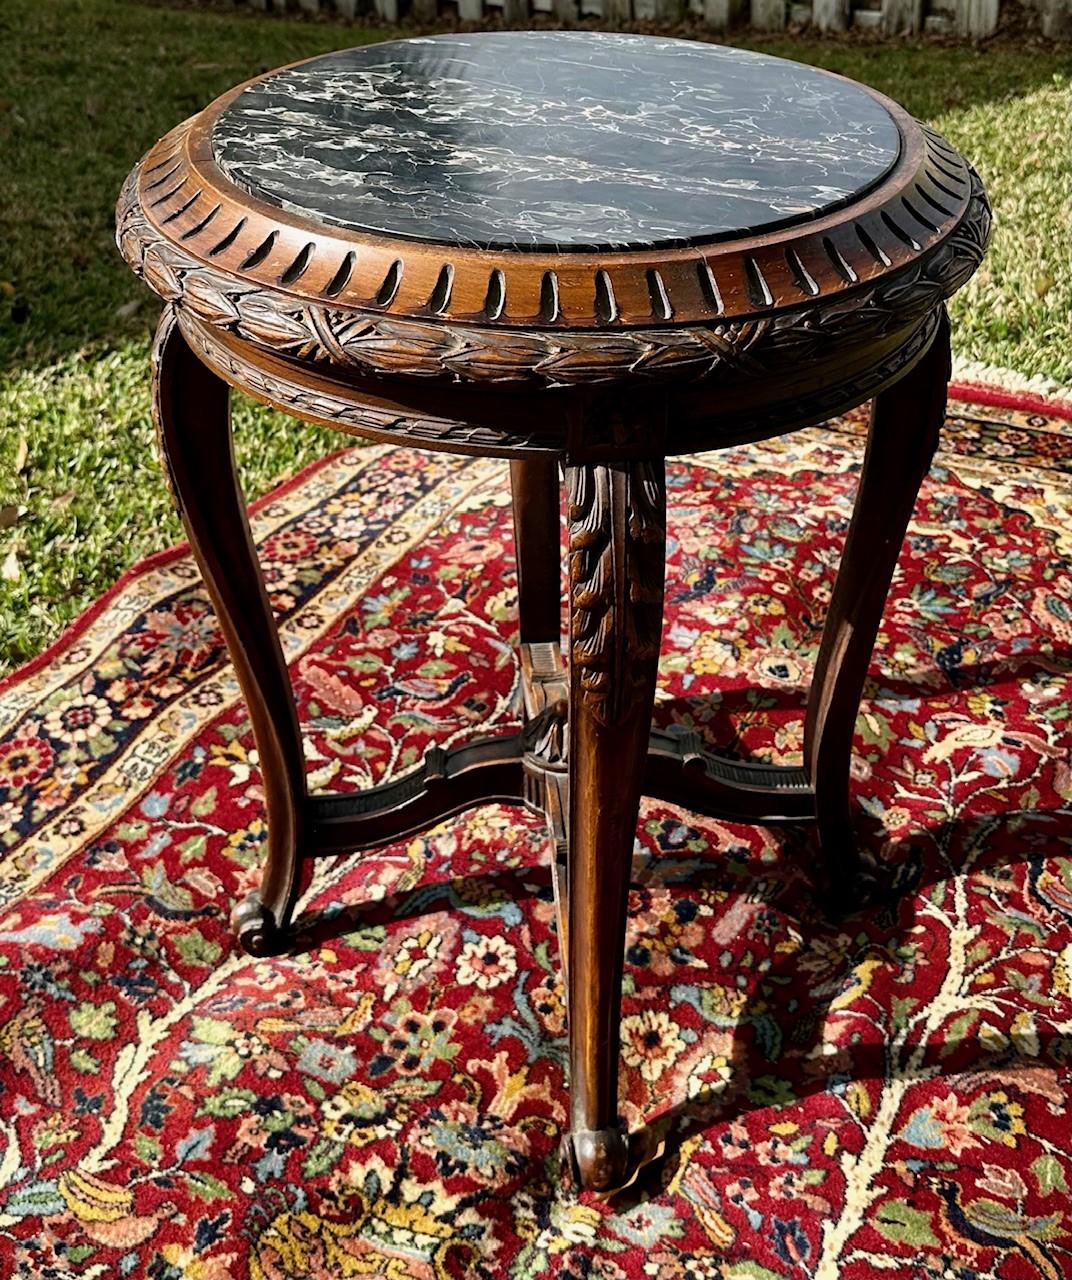 19. Jahrhundert Französisch Regence Stil Runde Marmorplatte Beistelltisch.

Dieser französische Tisch aus dem 19. Jahrhundert zeichnet sich durch kunstvolle Schnitzereien und eine runde Platte mit Marmoreinsatz aus.  Der schöne schwarze Marmor ist